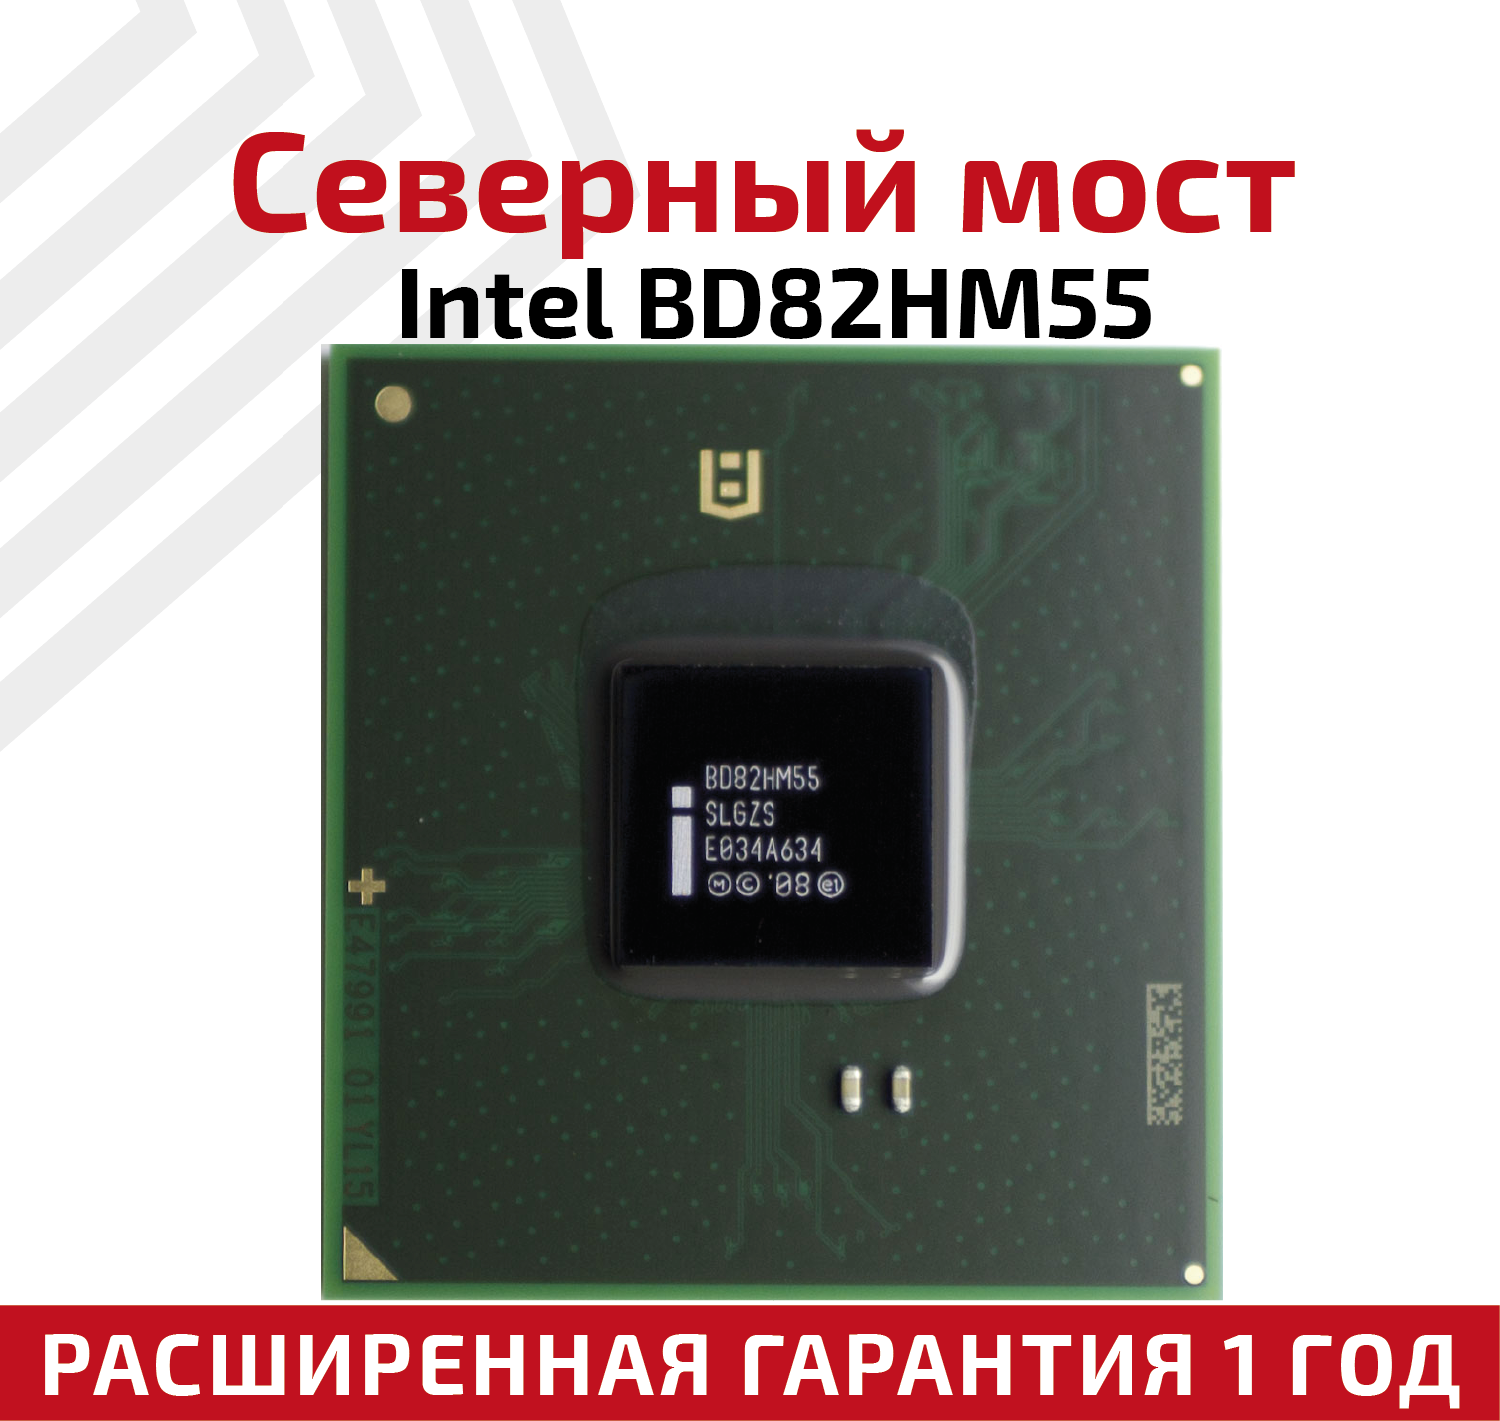 Северный мост Intel BD82HM55